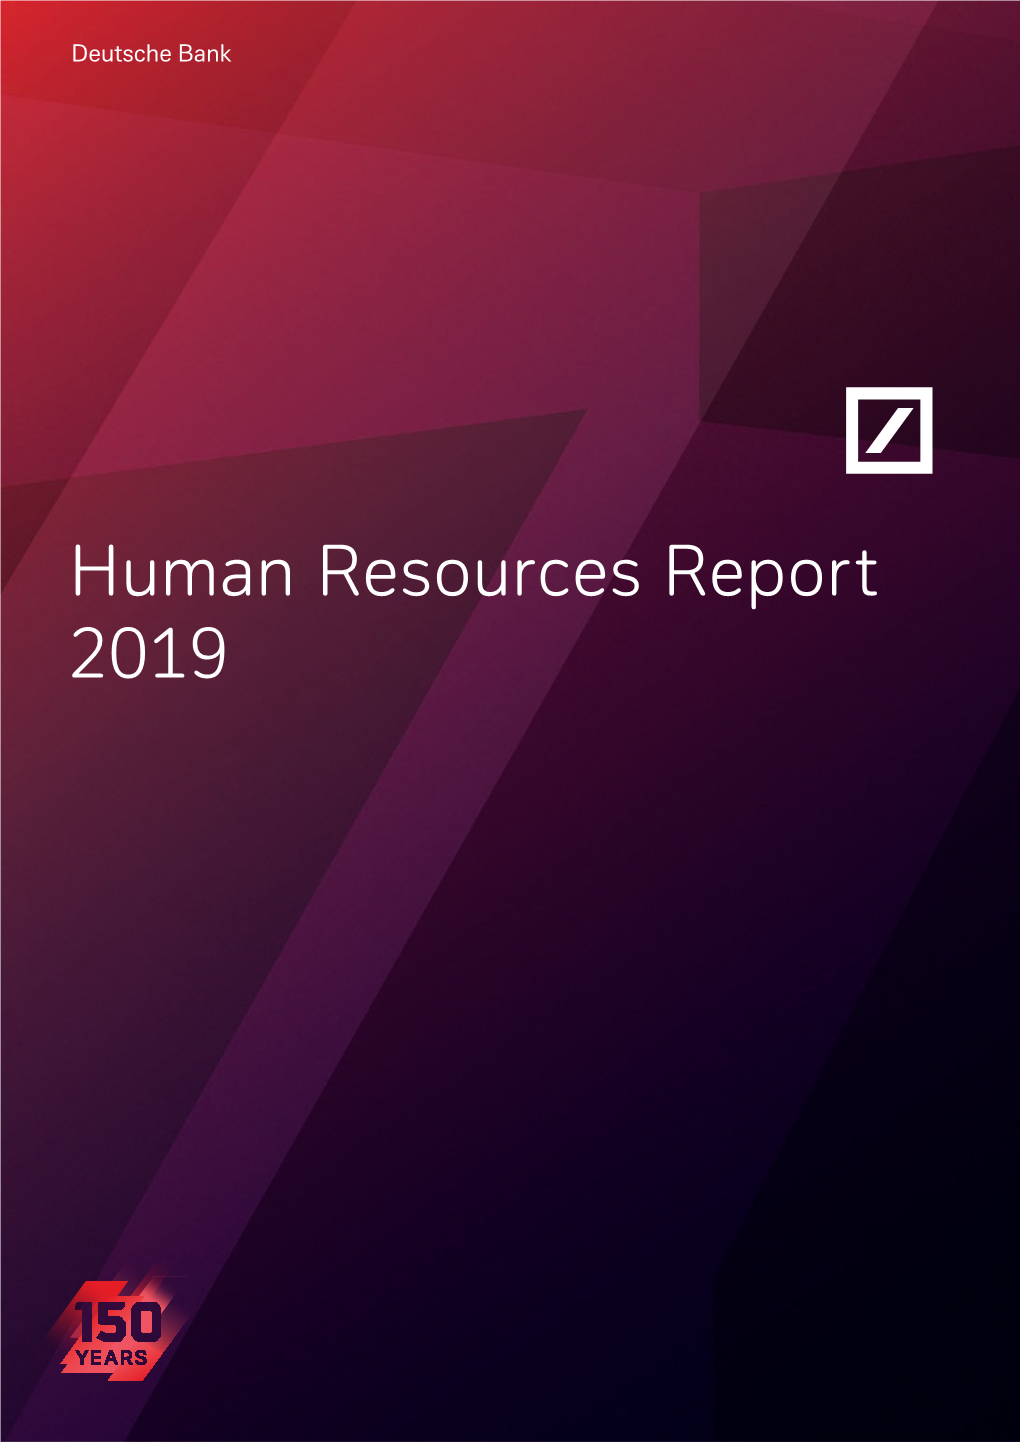 Deutsche Bank 2019 Human Resources Report